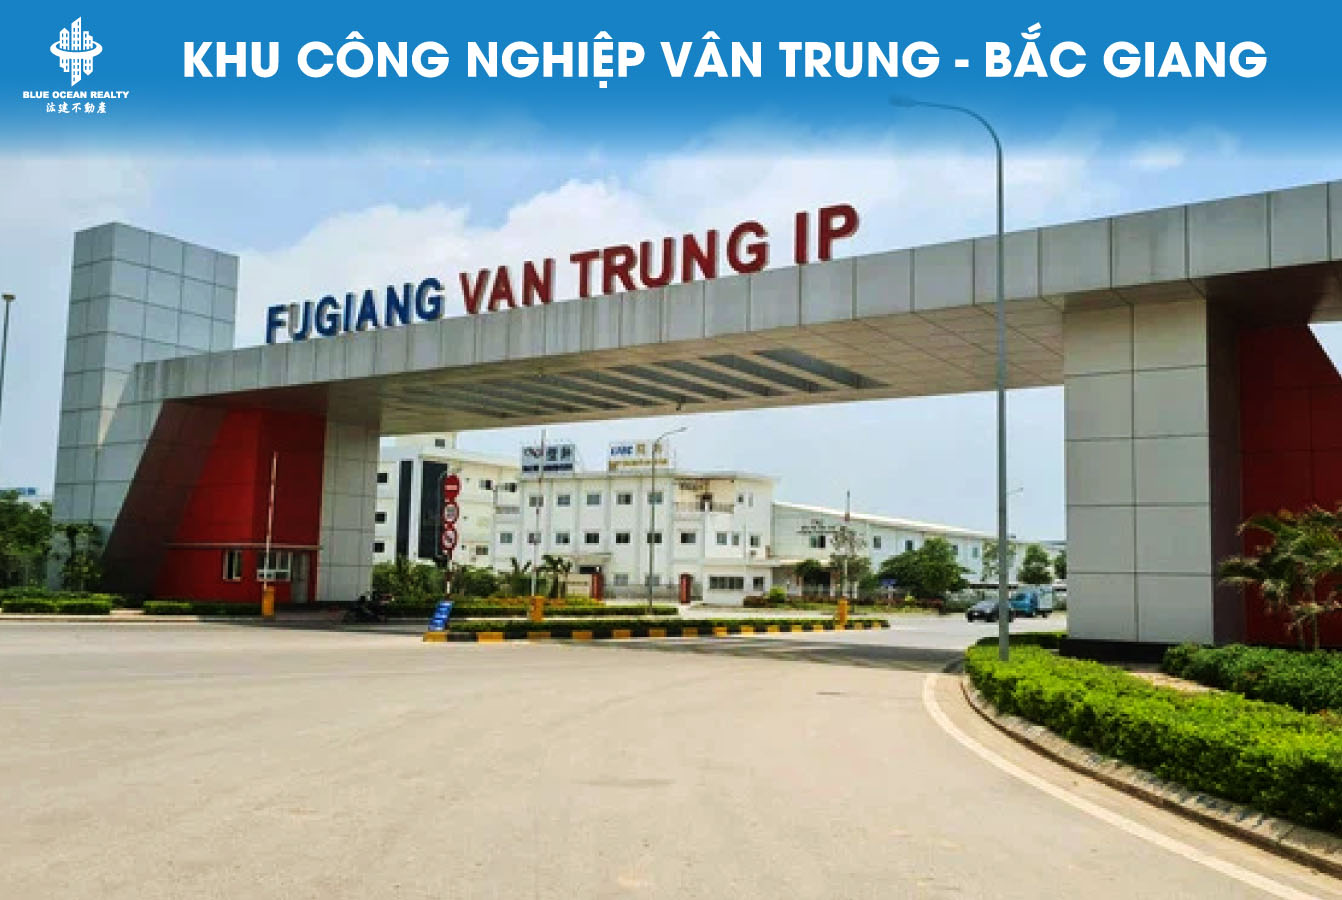 Khu công nghiệp (KCN) Vân Trung tỉnh Bắc Giang